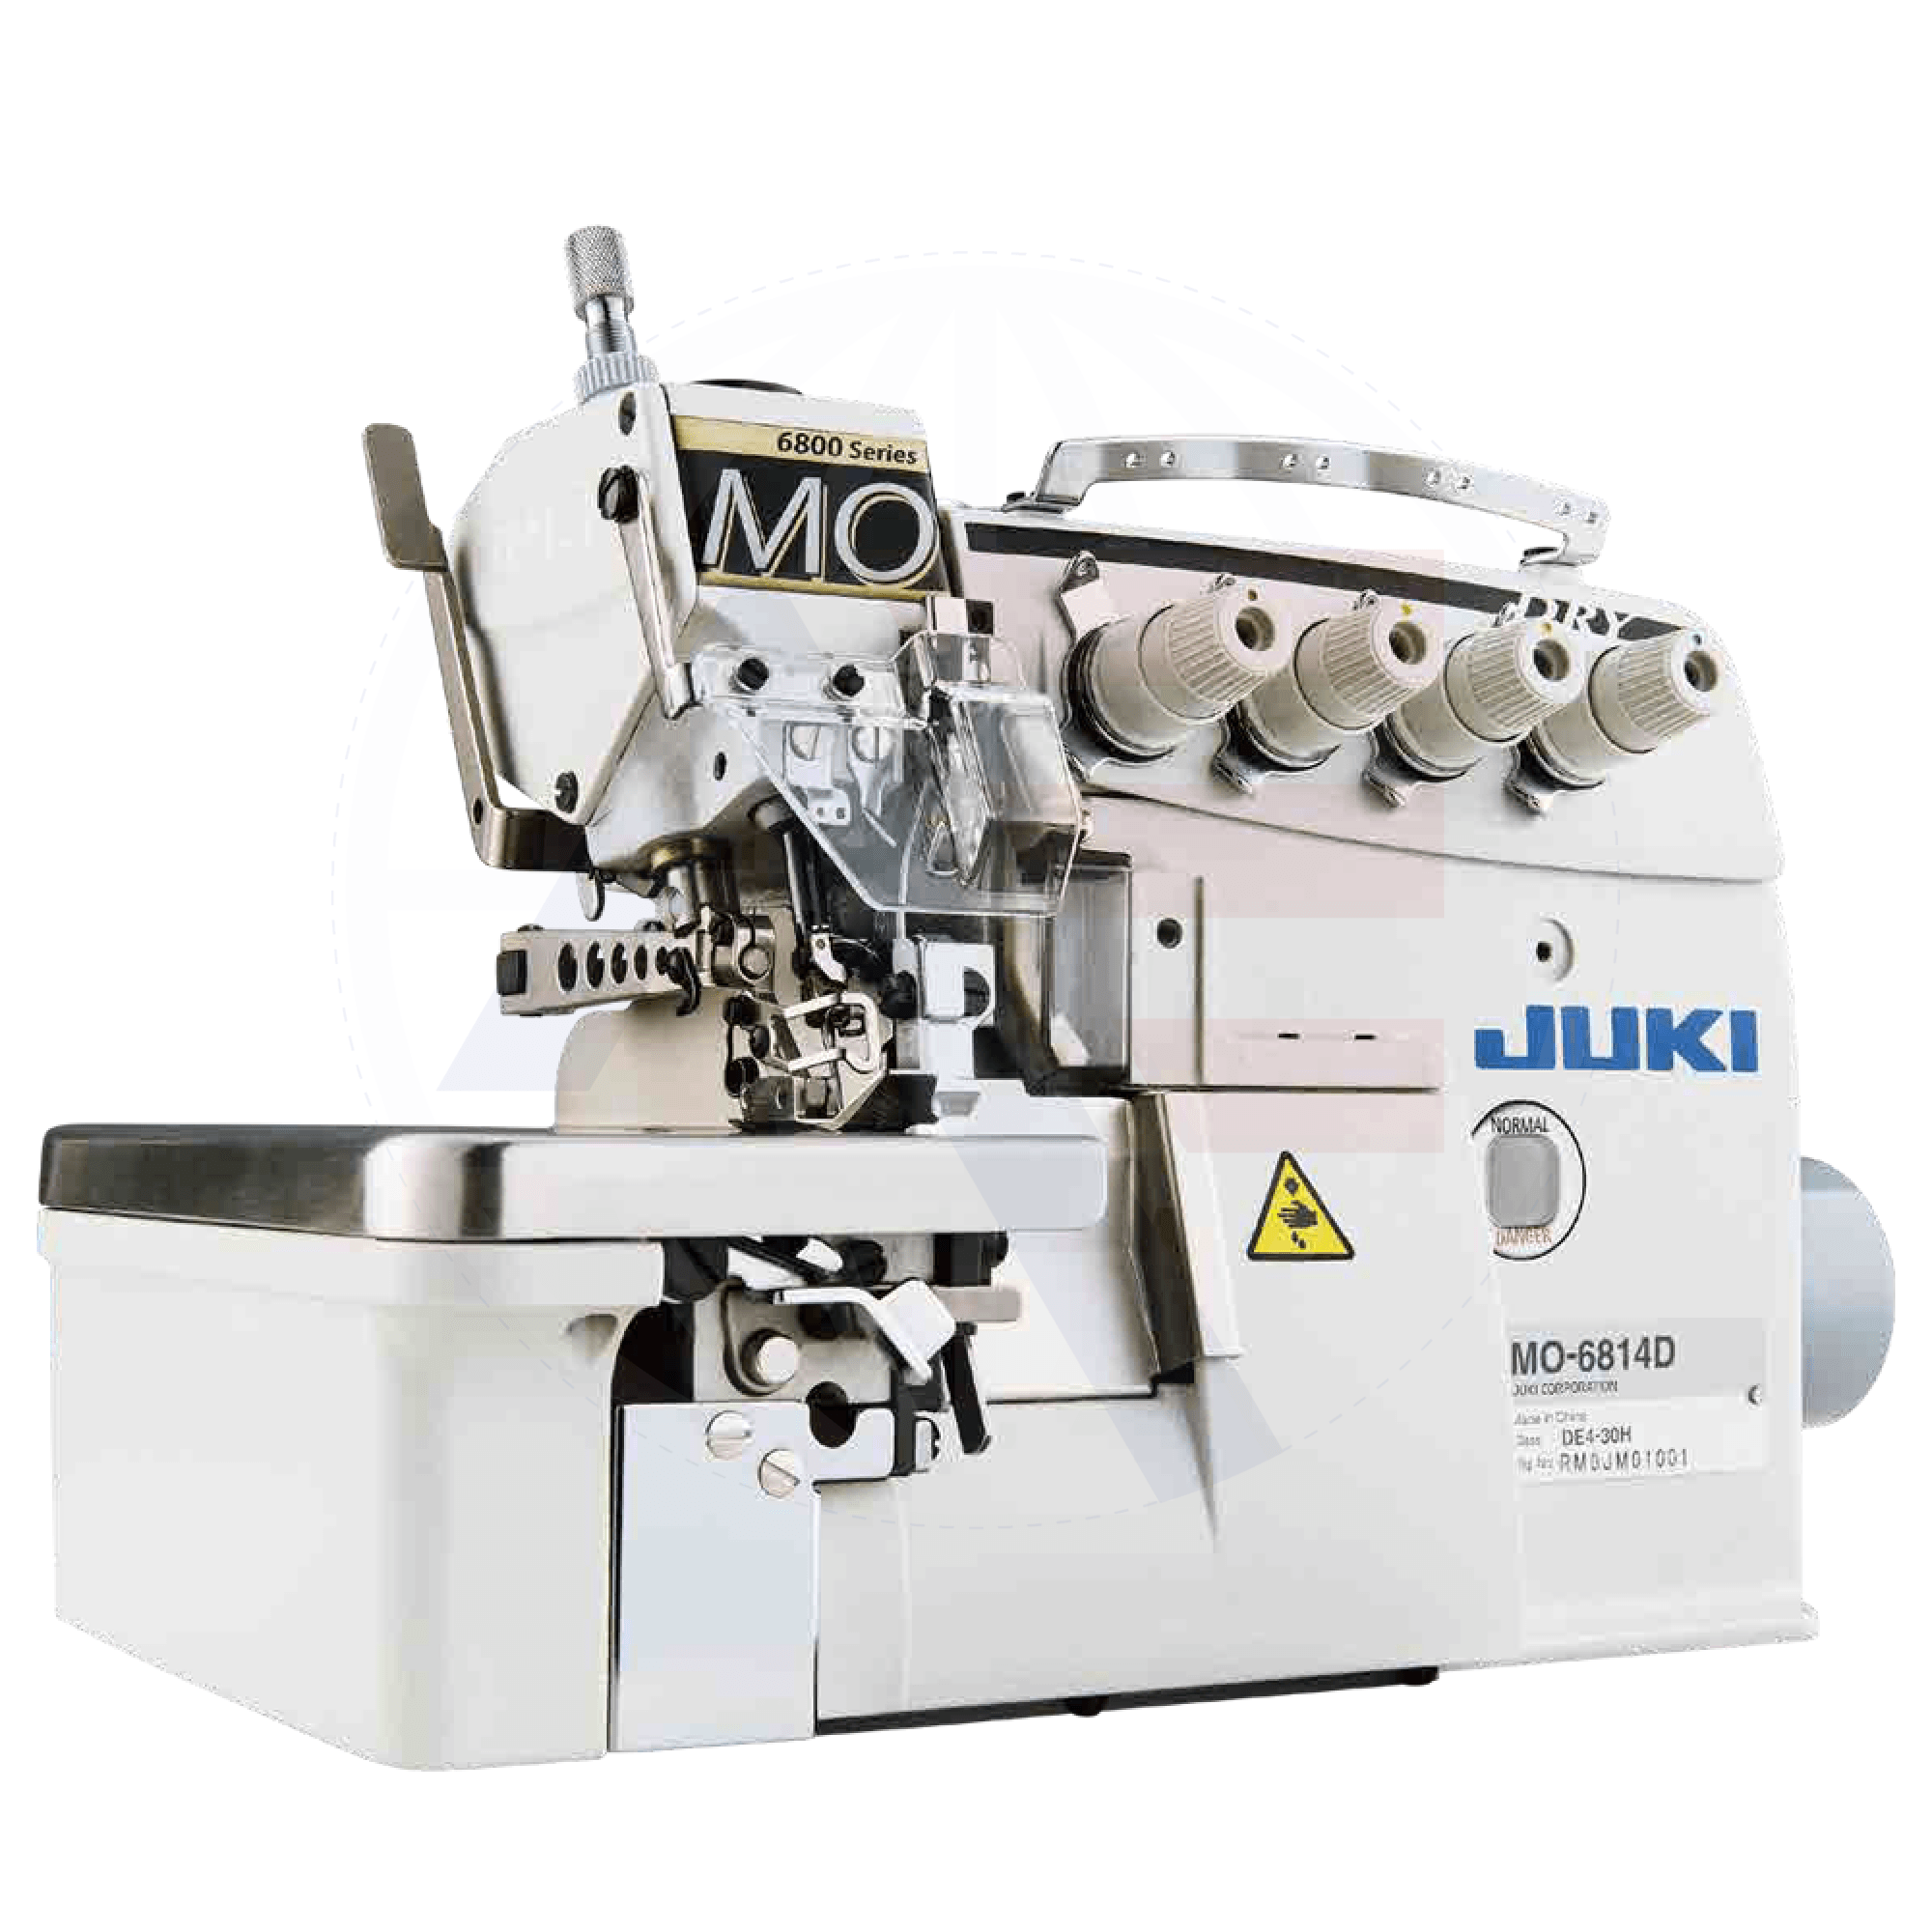 Juki Mo-6804D 3-Thread Overlock Machine Sewing Machines